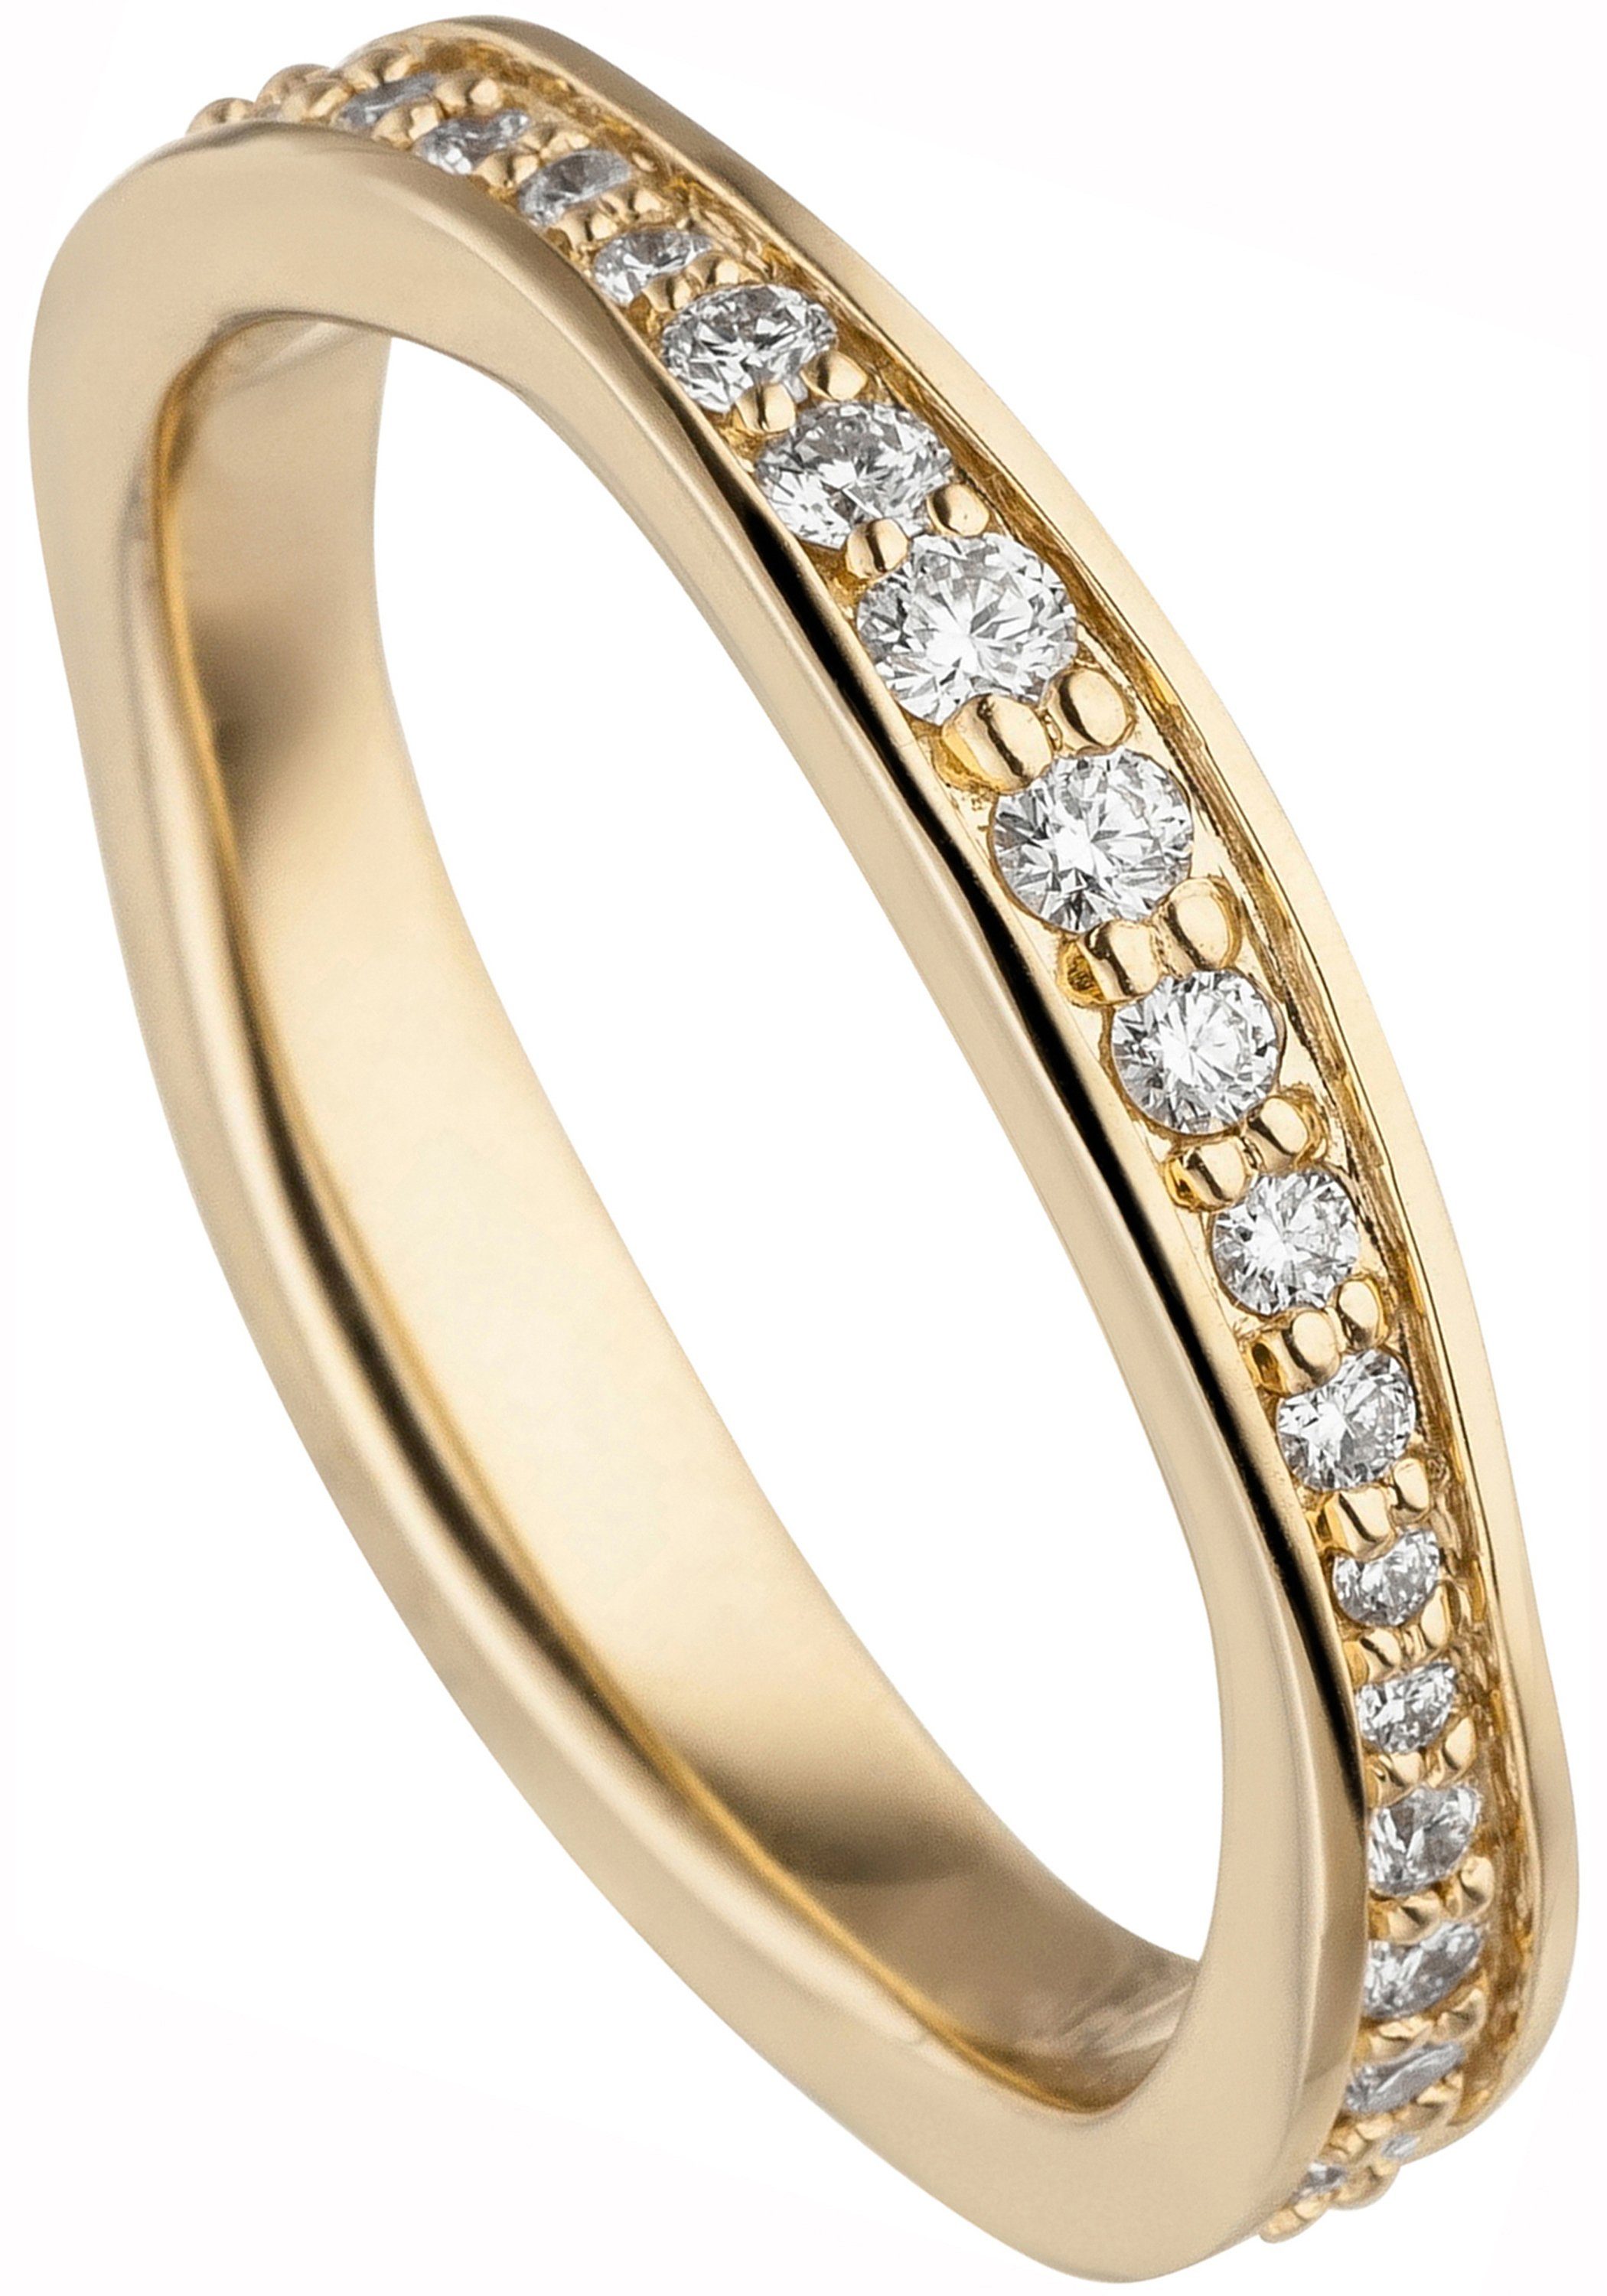 JOBO Fingerring Ring mit Diamanten rundum, 585 Gold, Juwelierqualität der  Marke JOBO